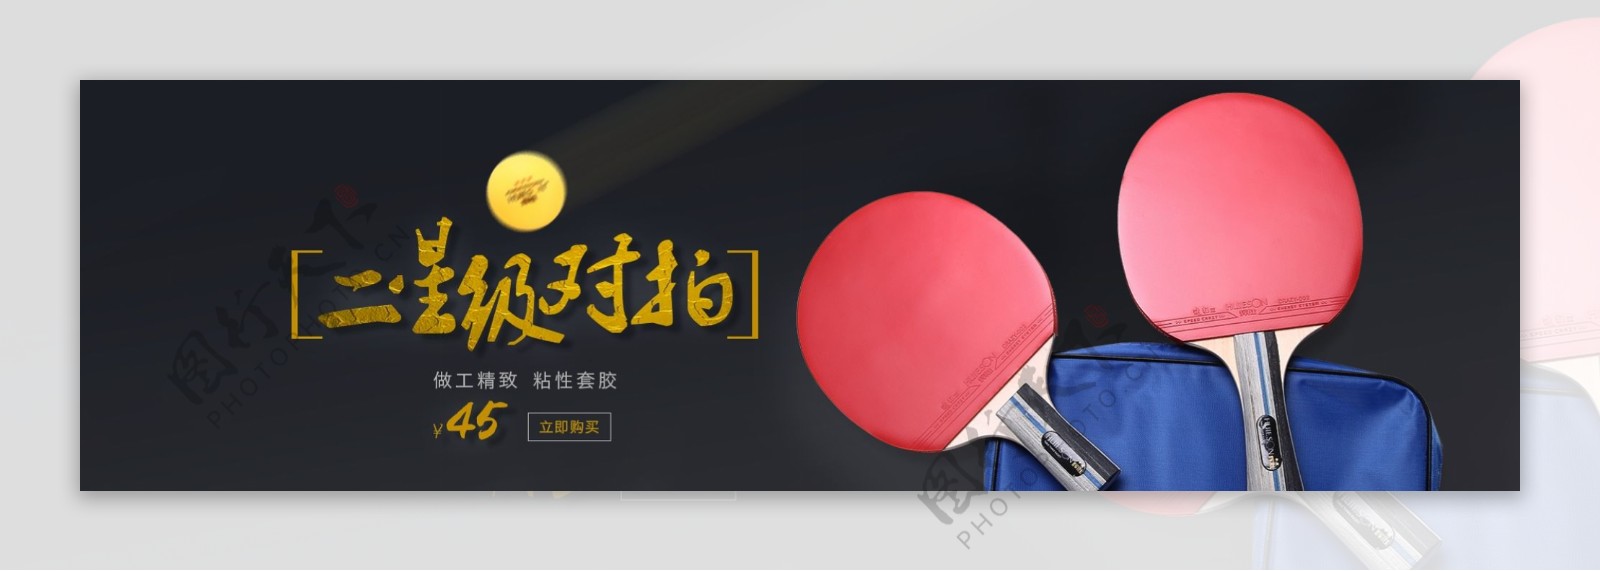 黑色背景乒乓球拍海报banner